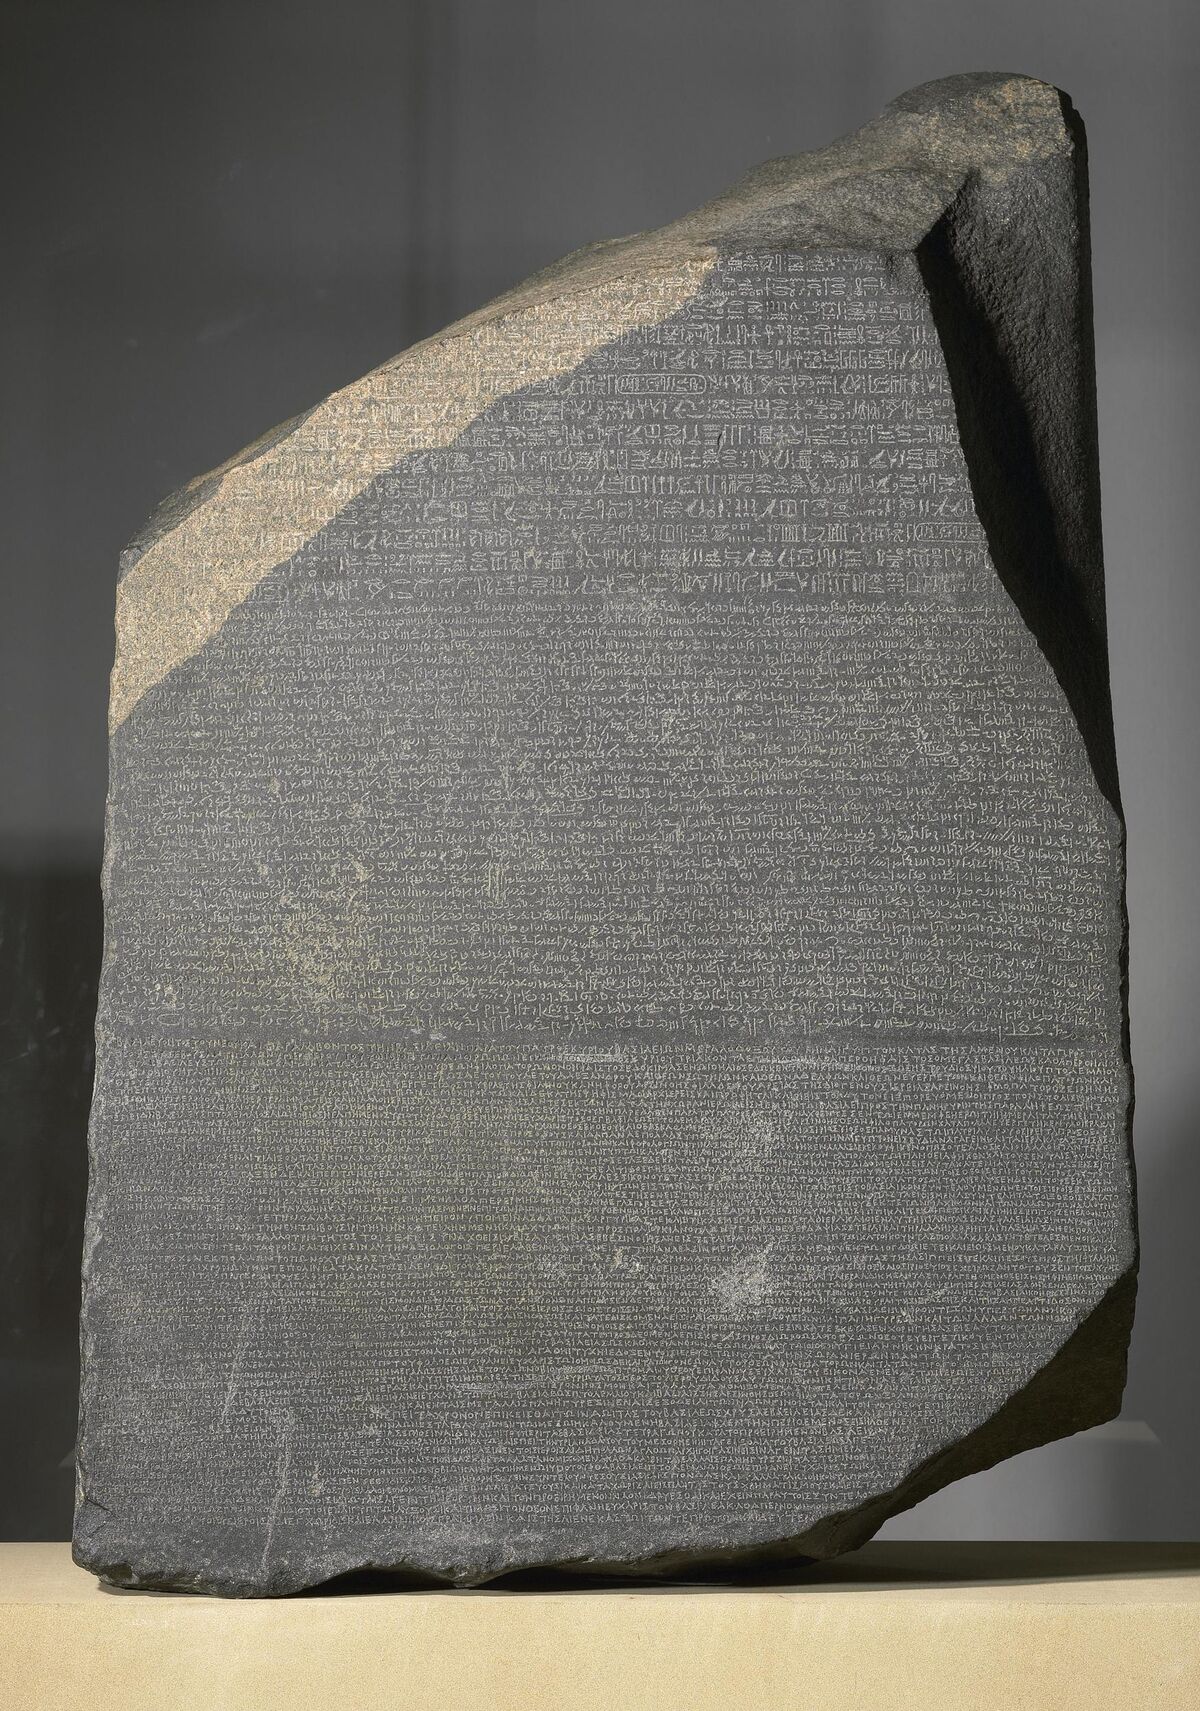 GFD 3/201: Stein von Rosetta, aus Fort St. Julien, el-Rashid (Rosetta), Ägypten, Ptolemäische Ära, 196 v. Chr.